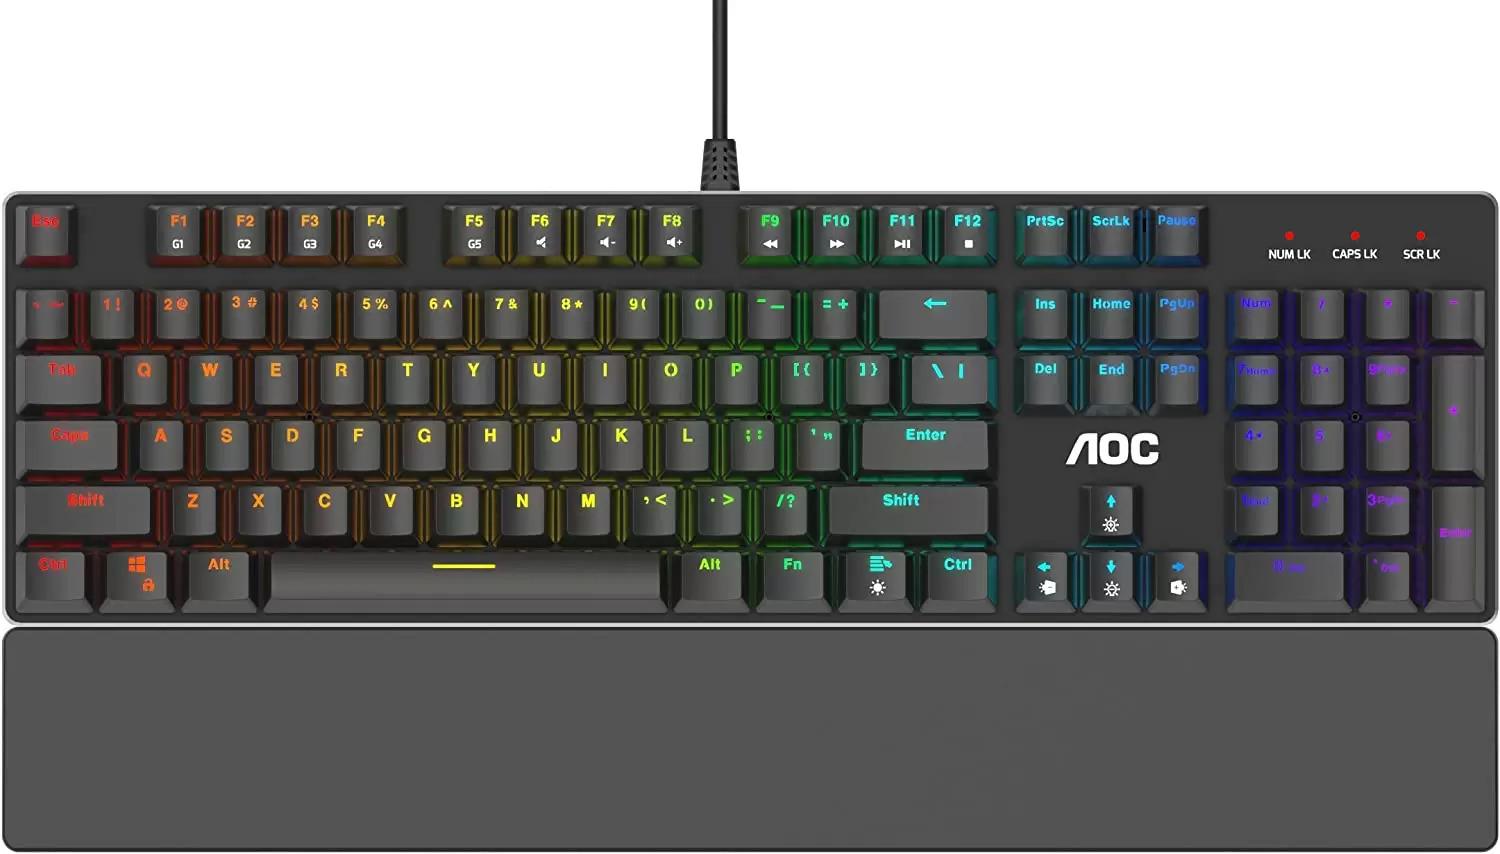 AOC Full RGB Mechanical Keyboard for $19.99